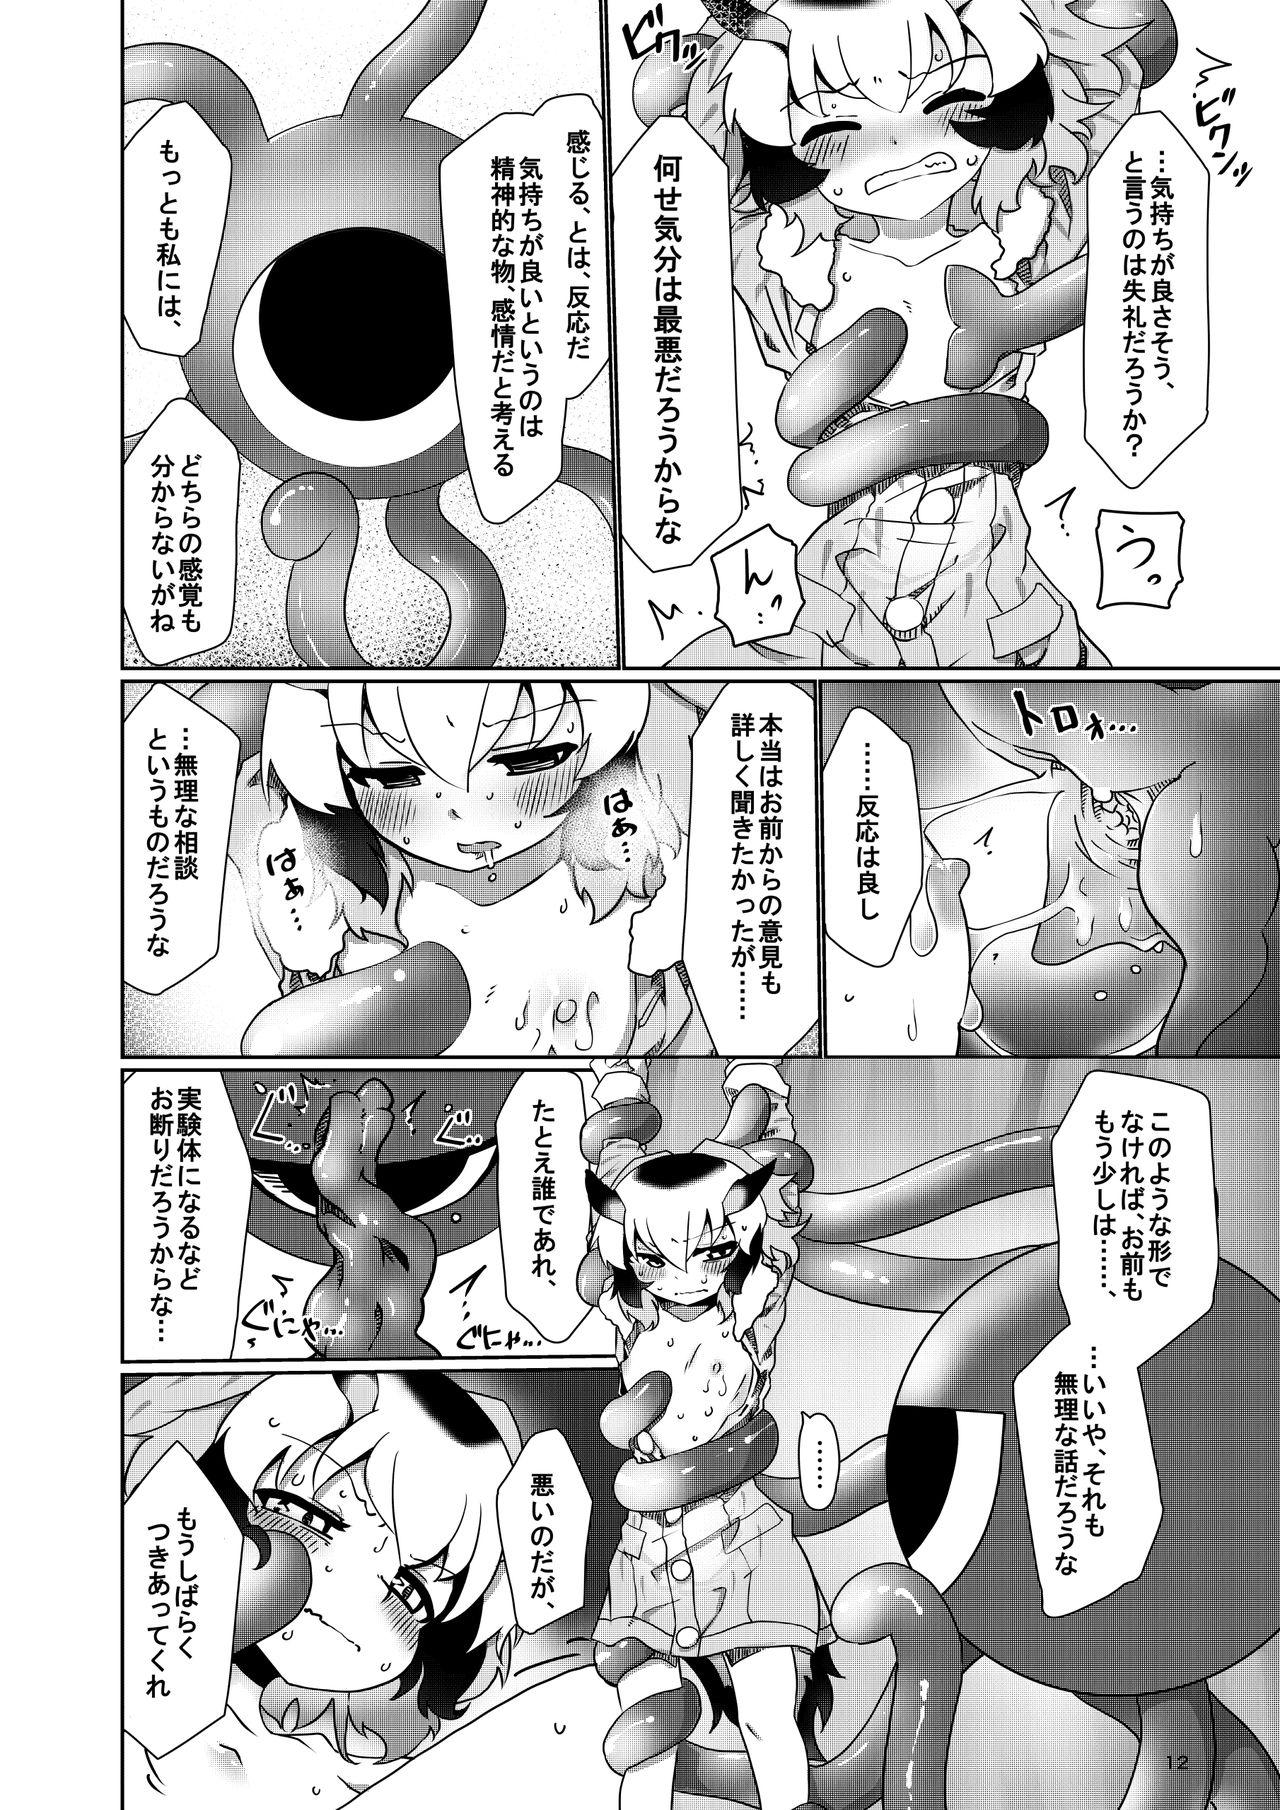 Panties APPLE WOLF 0007 Kono wa Ecchi 4 - Kemono friends Doggystyle Porn - Page 12